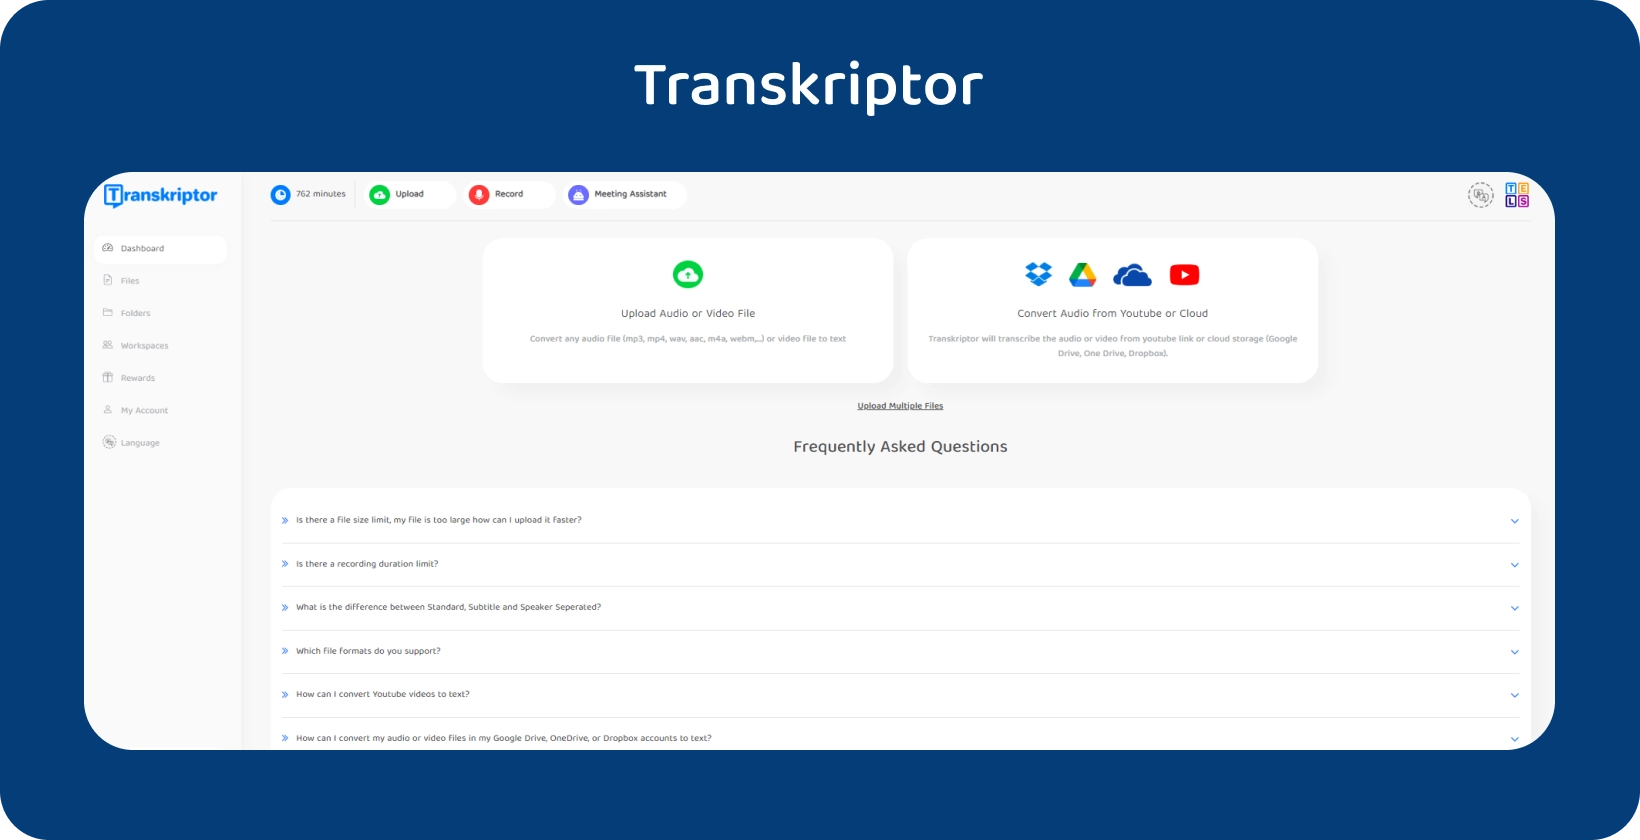 Transkriptor interfejs koji promoviše svoju uslugu konverzije audio-teksta.